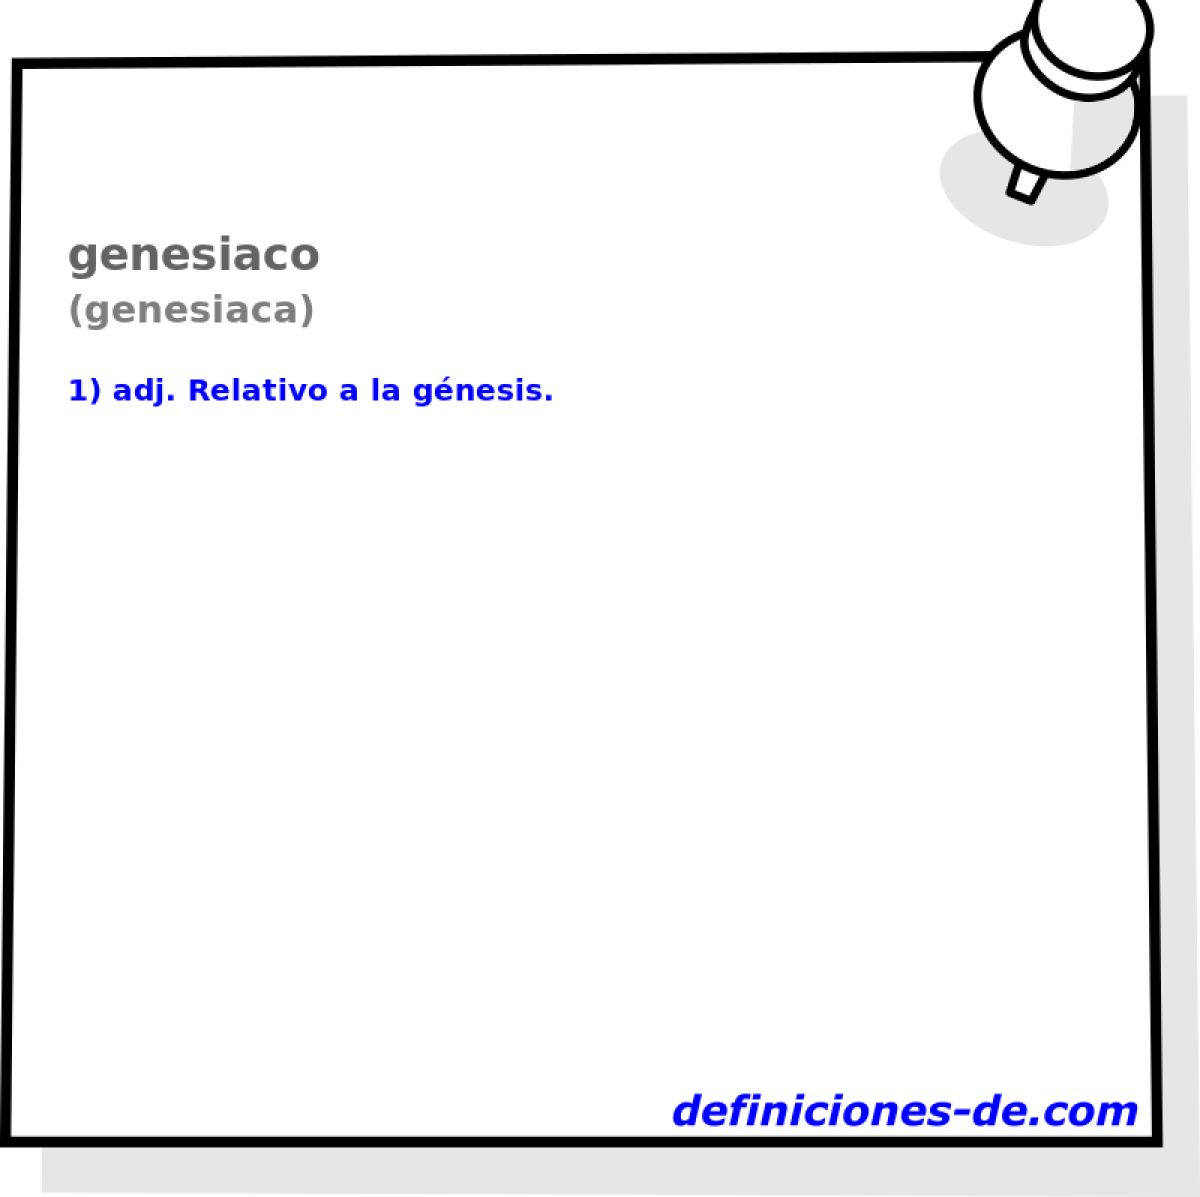 genesiaco (genesiaca)